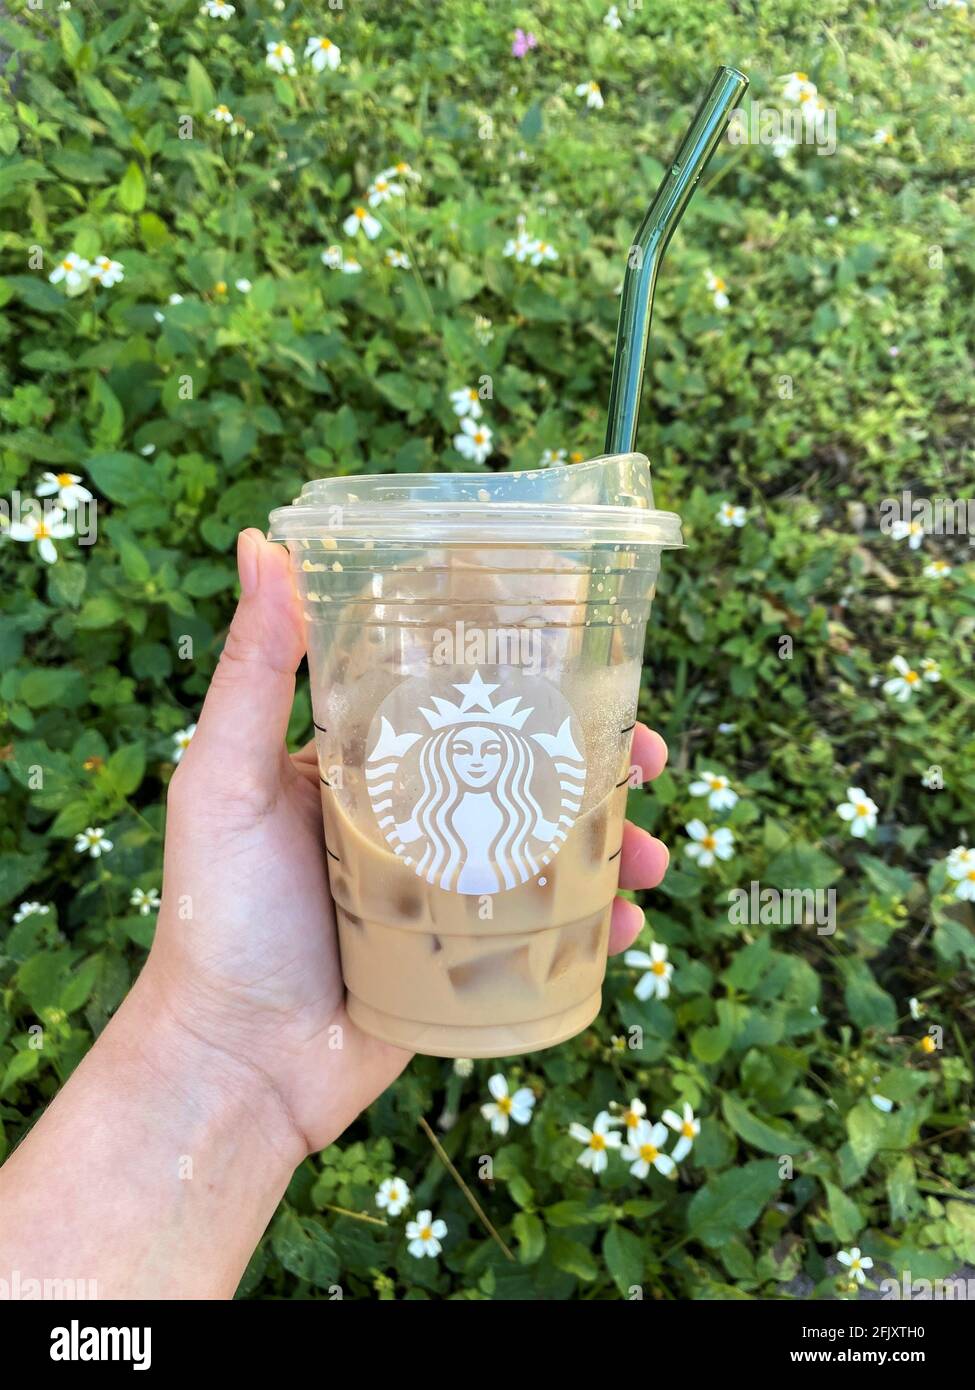 Das Halten eines Glashalms in einer Starbucks Kaffeetasse sollte die Notwendigkeit von Einweg-Plastikhalmen reduzieren, indem wiederverwendbare Strohhalme verwendet werden. Grünes Gras Hintergrund Stockfoto